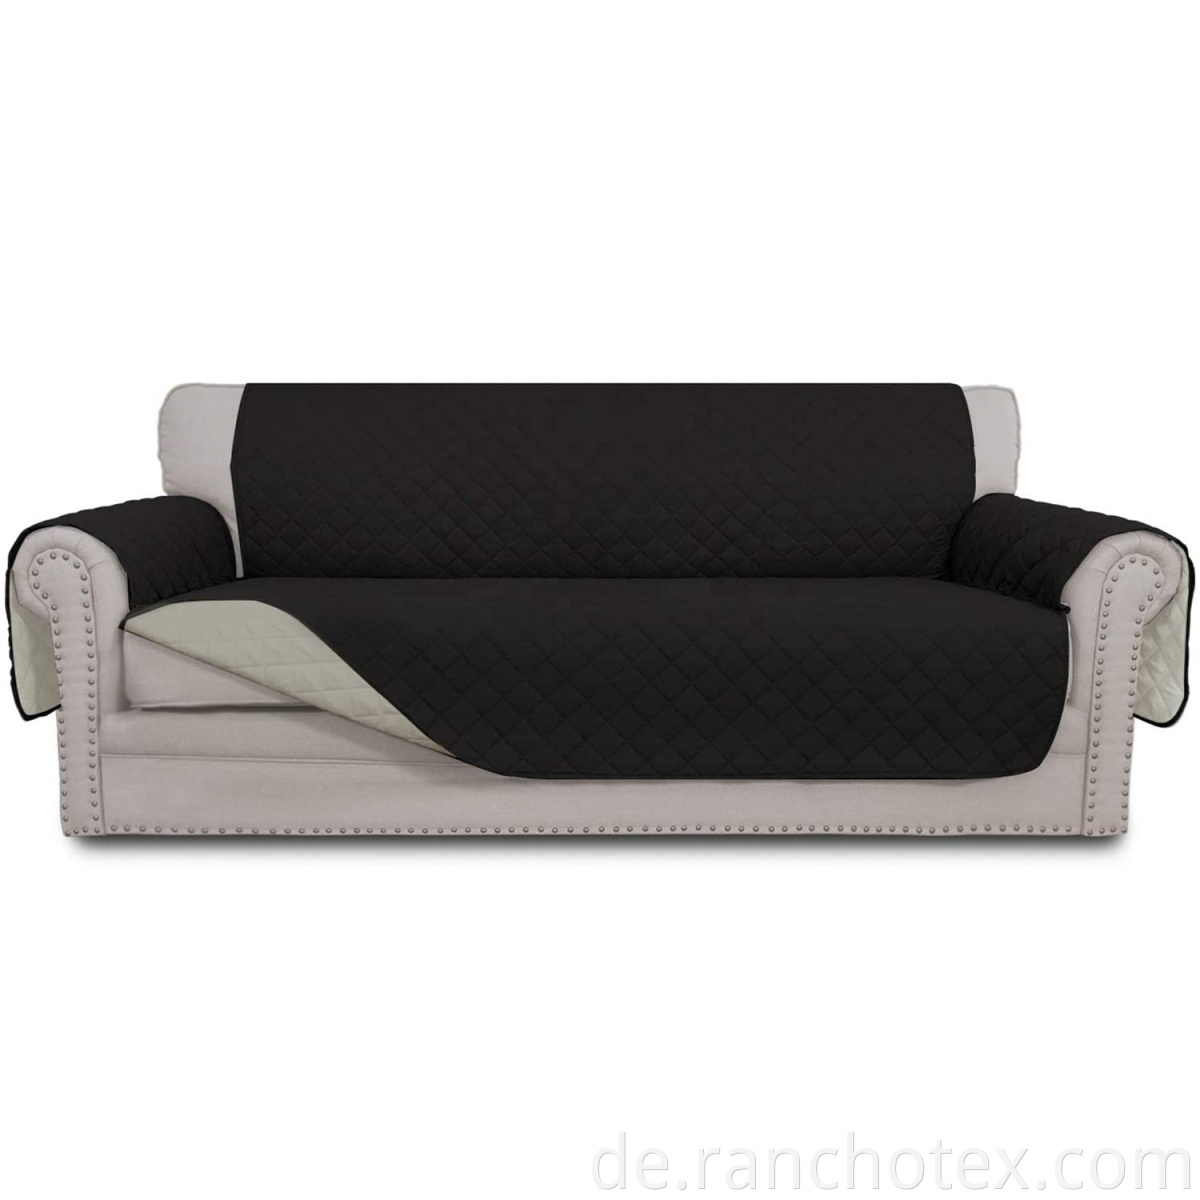 Wholesales -gestepte Sofa -Deckung reversible wasserfeste Couch Deckungen Schlupfsofa -Abdeckung für Hunde Haustiere Kinder